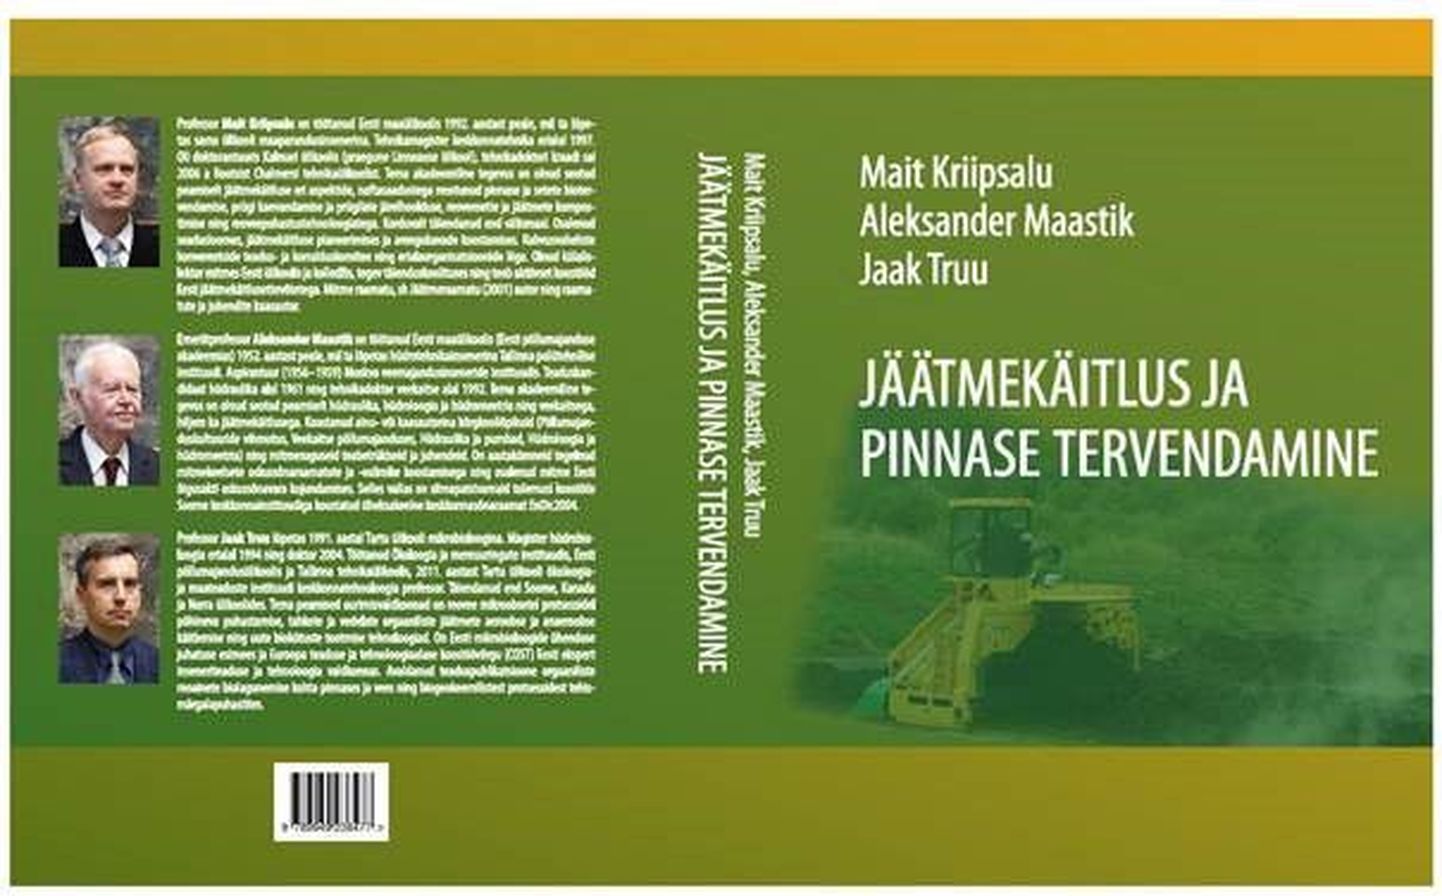 Mait Kriipsalu, Aleksander Maastiku ning Jaak Truu koostatud kõrgkooliõpik «Jäätmekäitlus ja pinnase tervendamine».